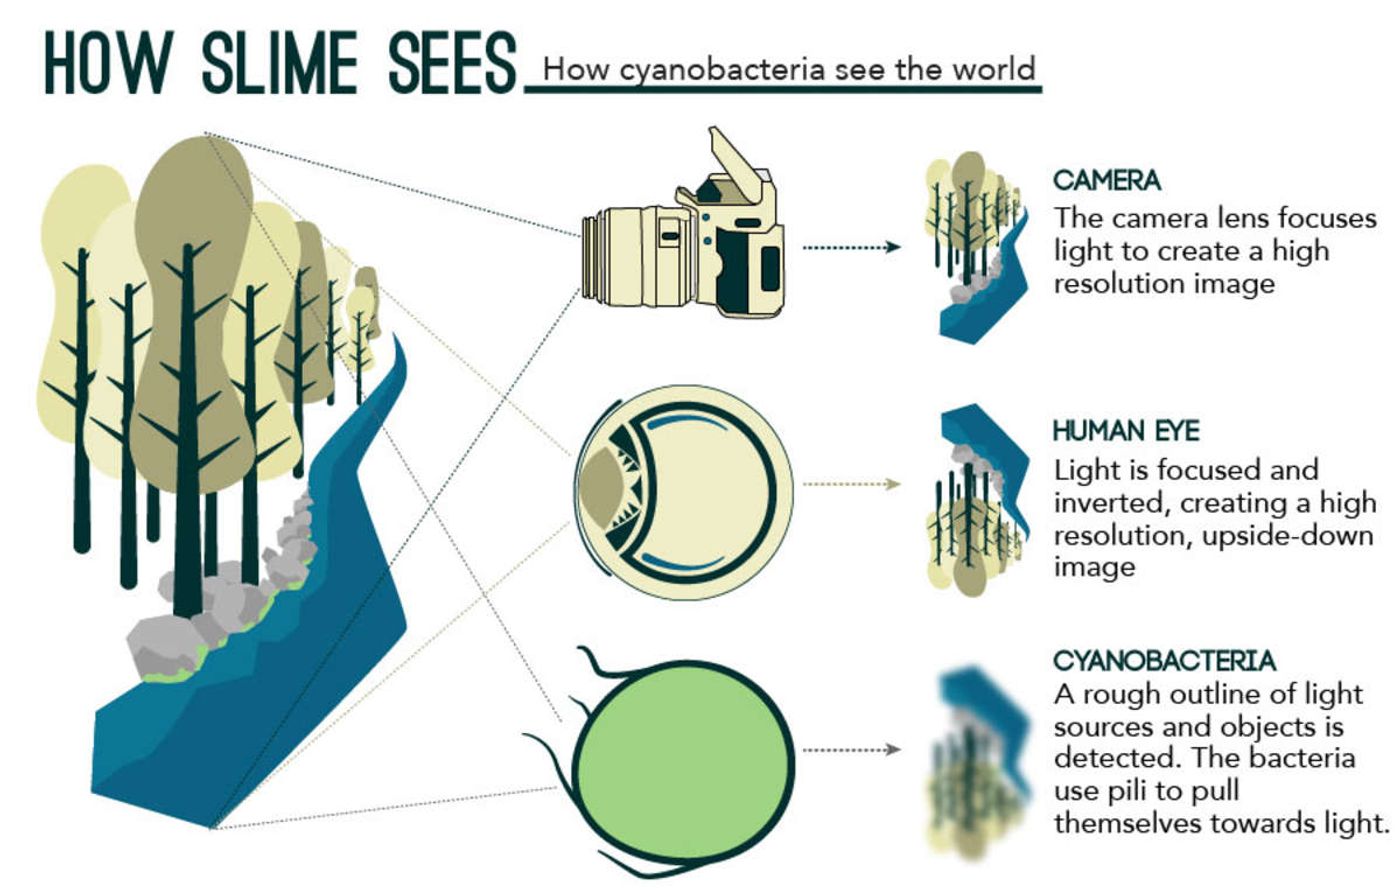 Cyanobacteria act like tiny eyes.